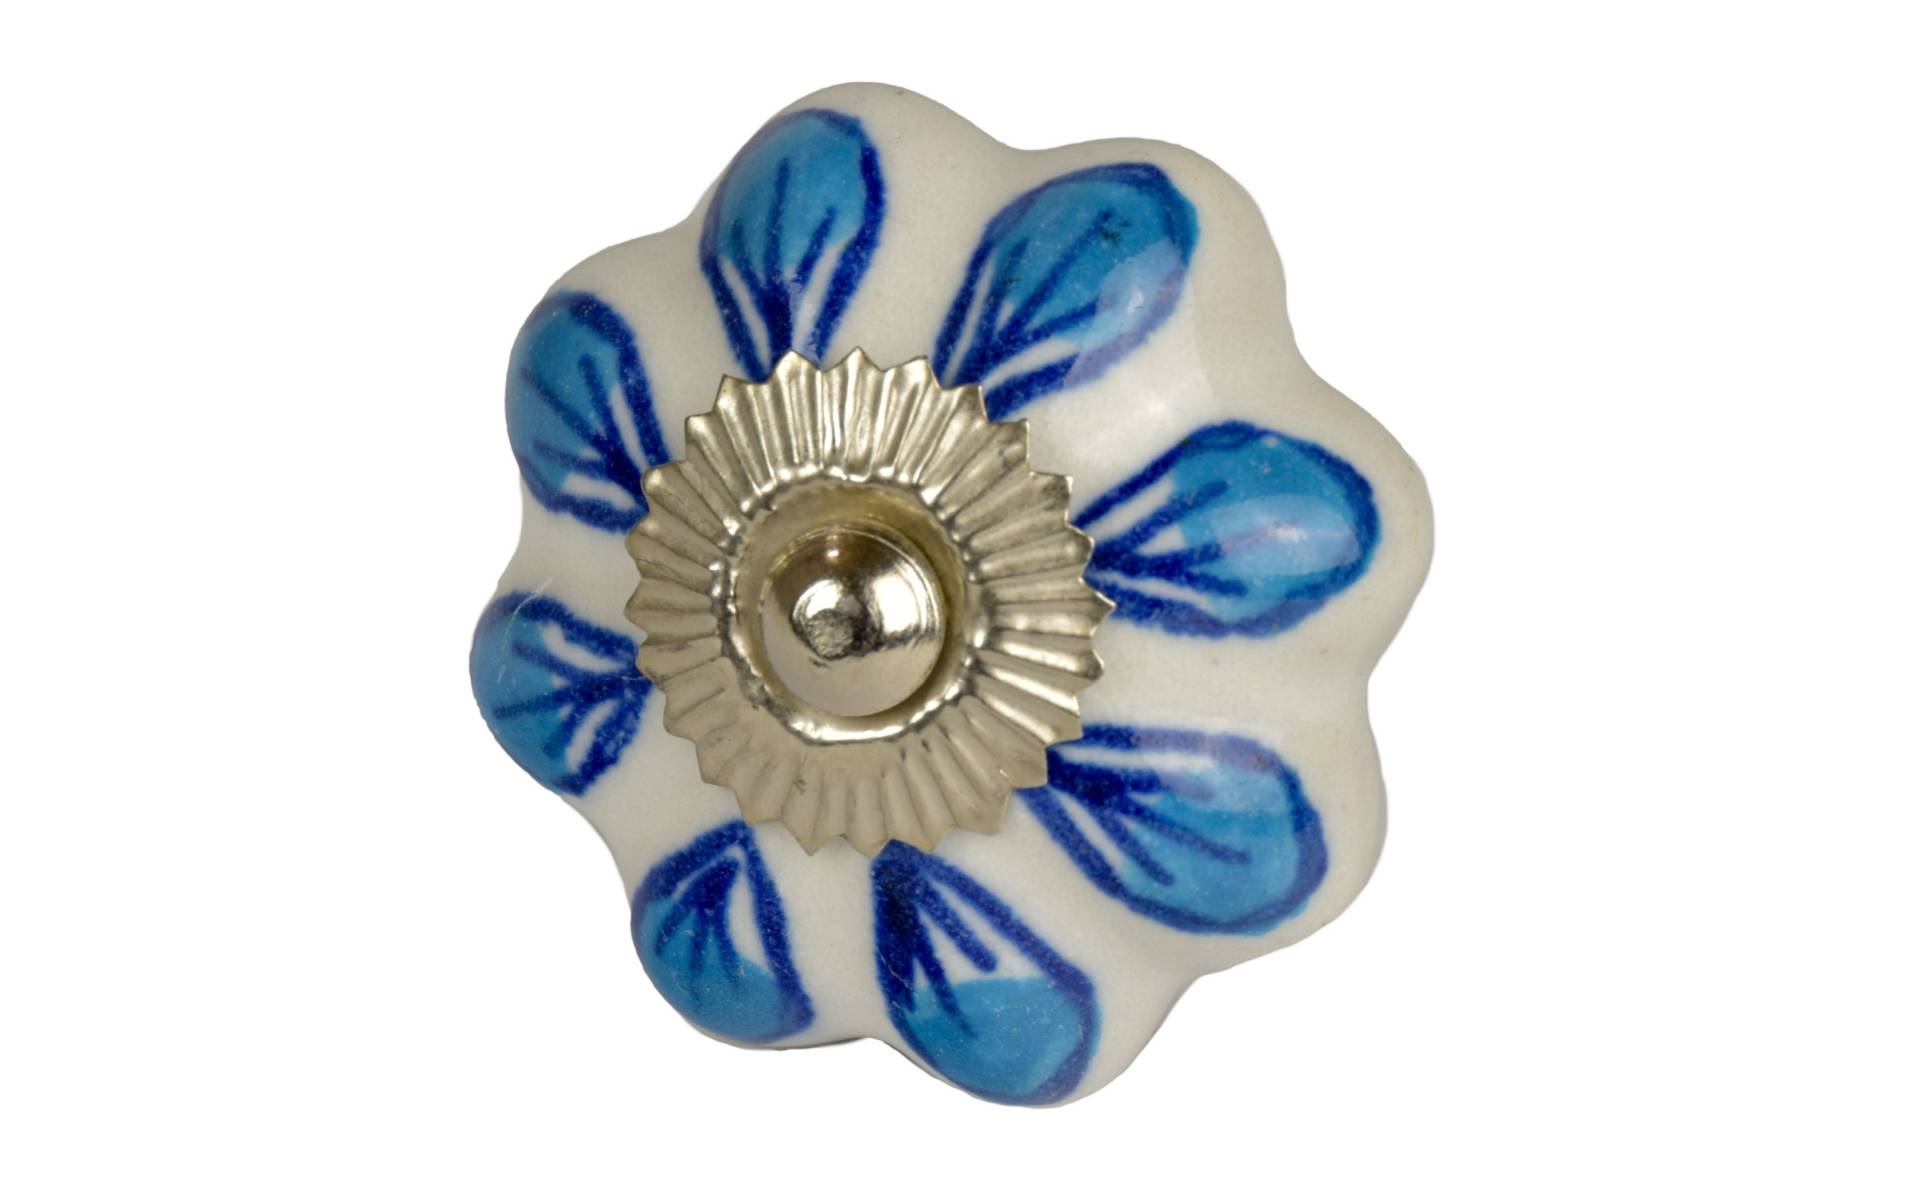 Maľovaná porcelánová úchytka na šuplík, biela, modré okvetné listy, priemer 4,5 cm